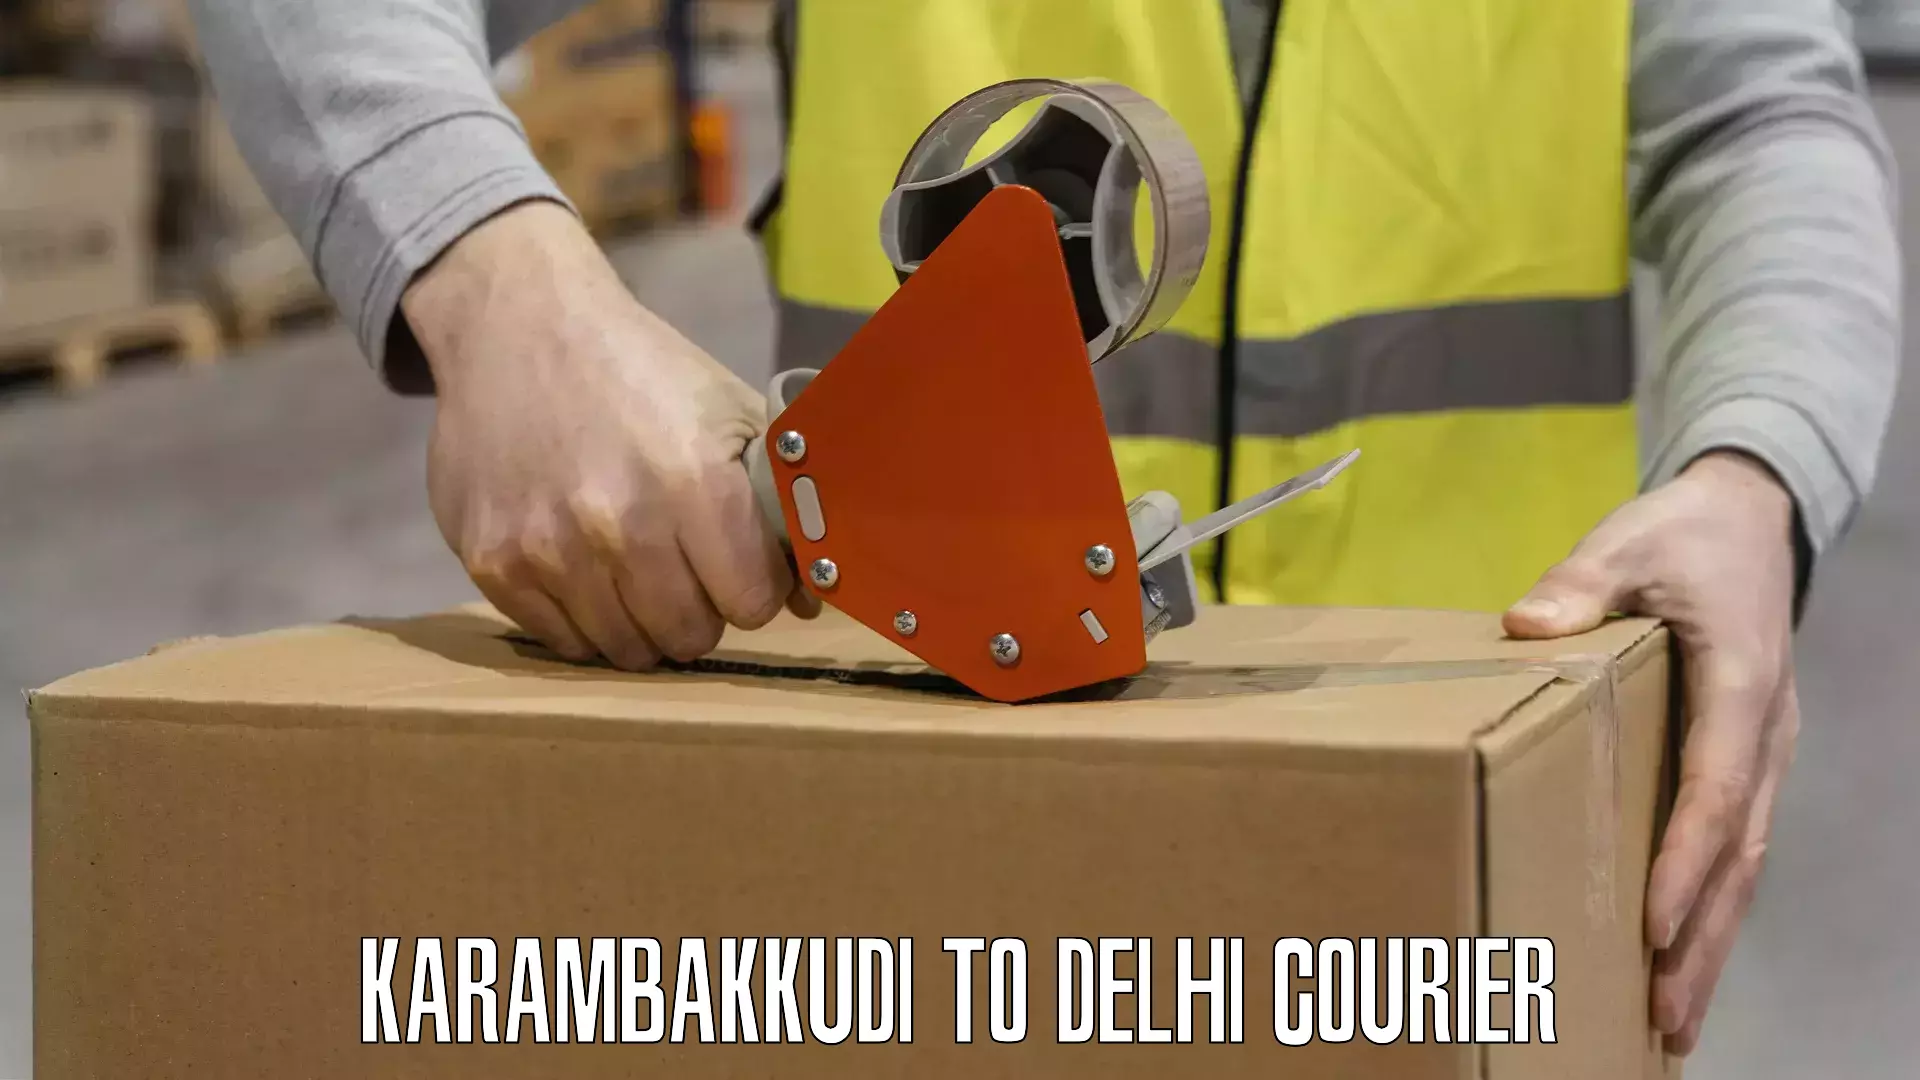 Bulk courier orders Karambakkudi to Kalkaji